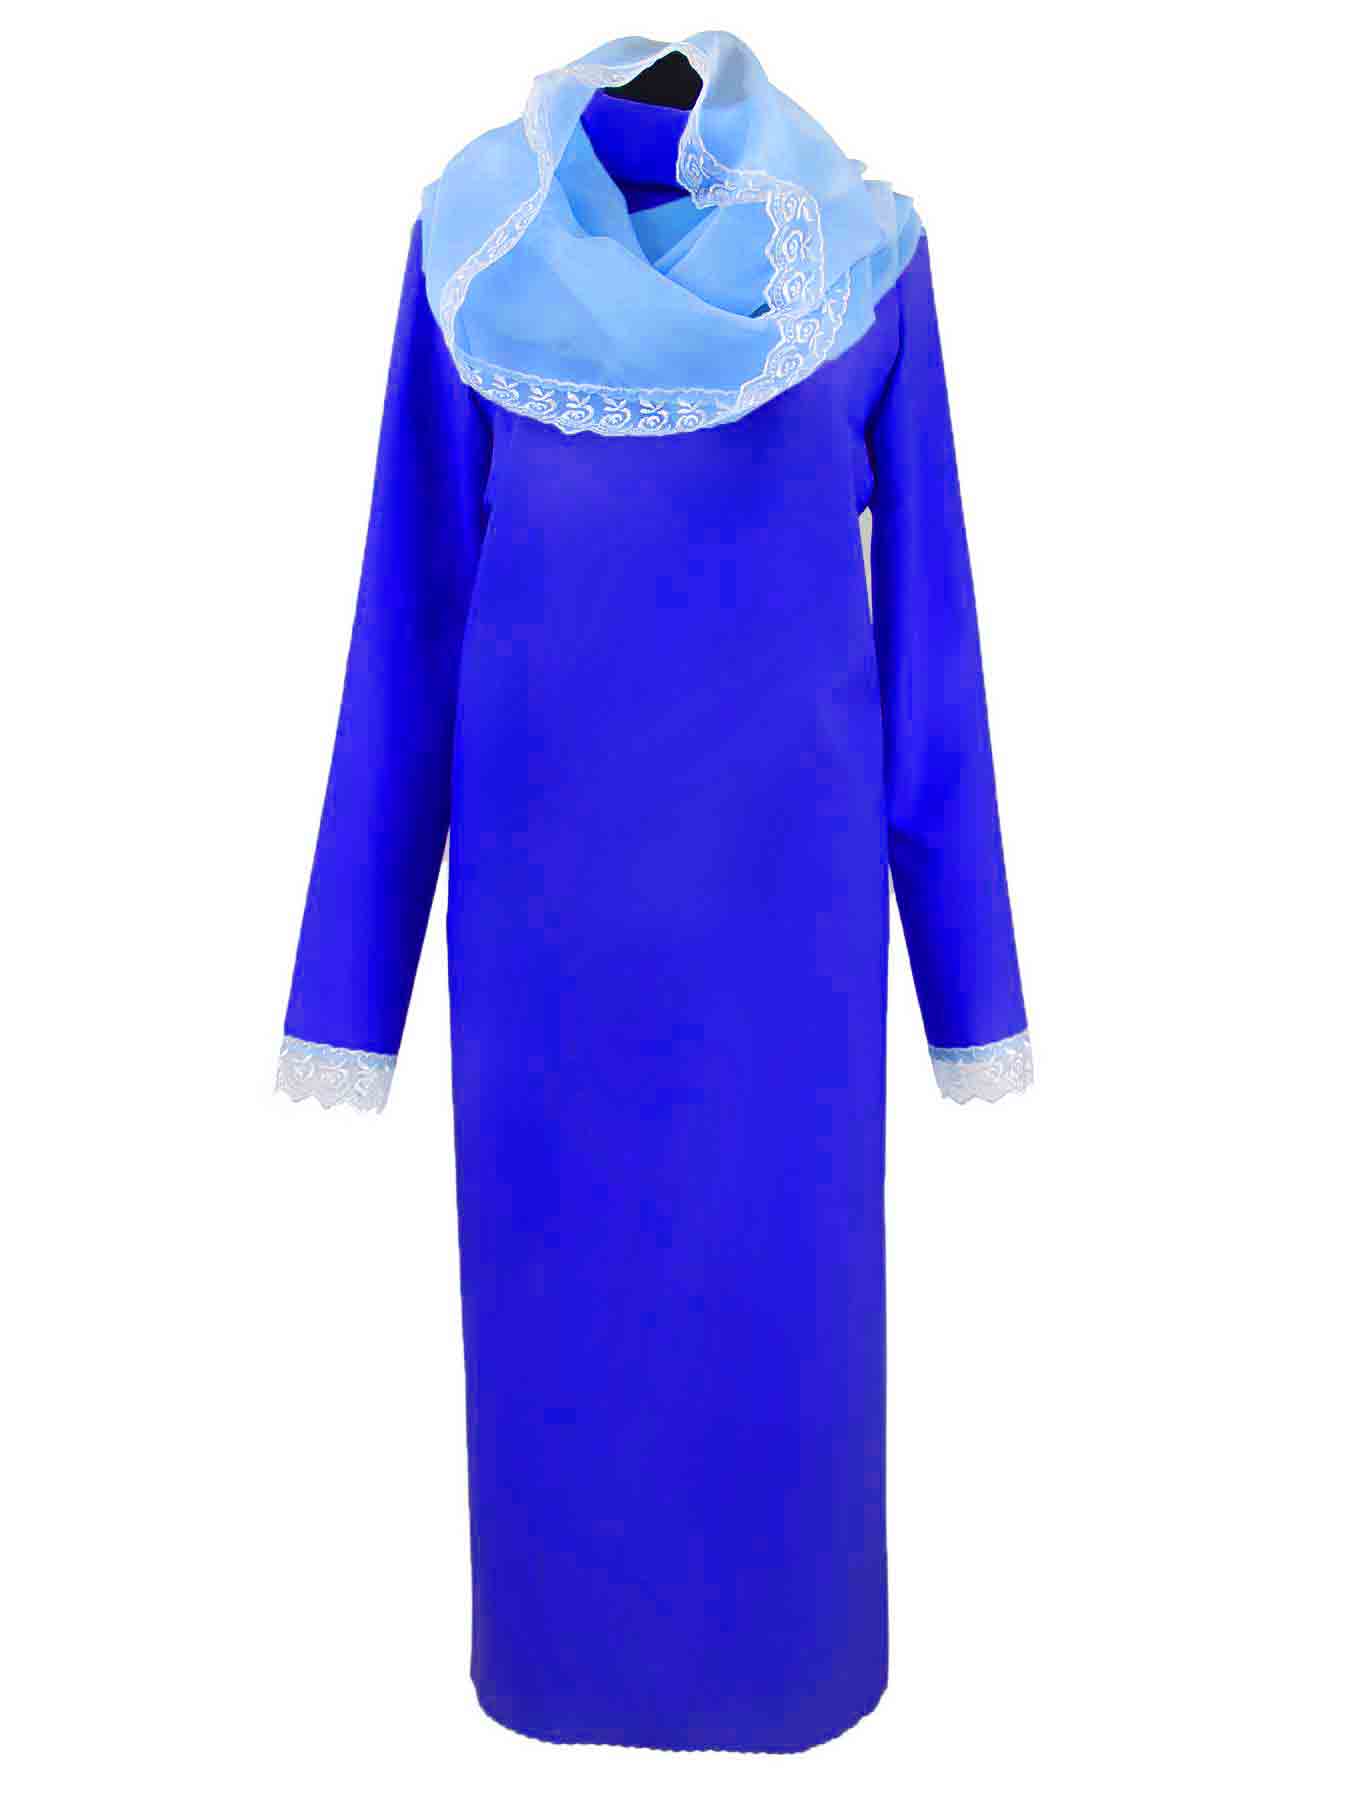 Платье для похорон (синее) с капором. Ритуальная одежда для похорон